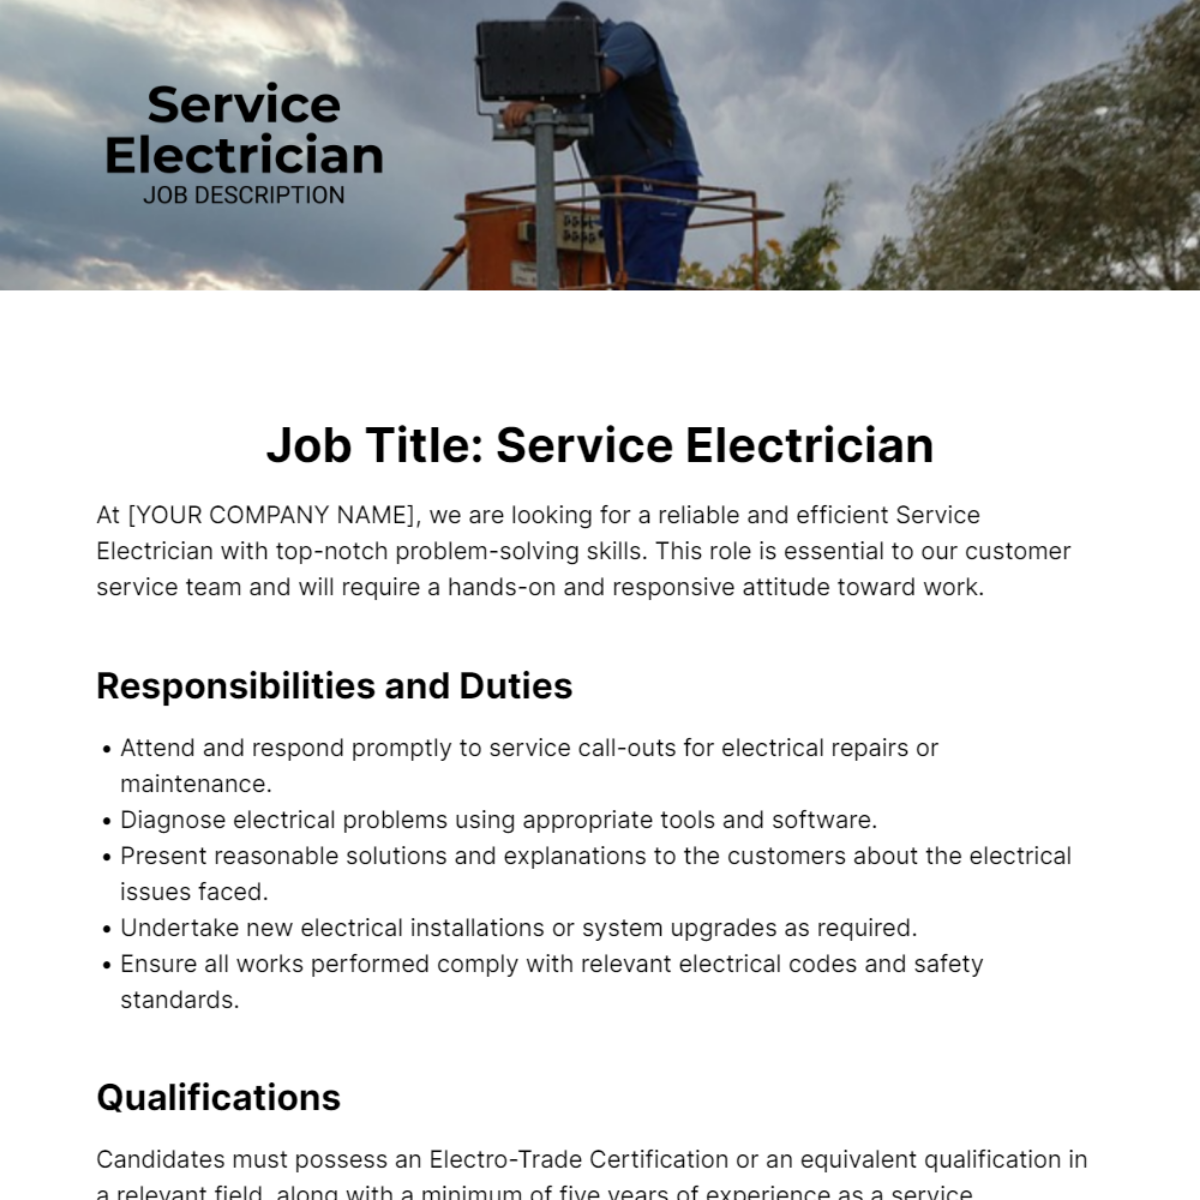 Service Electrician Job Description Template